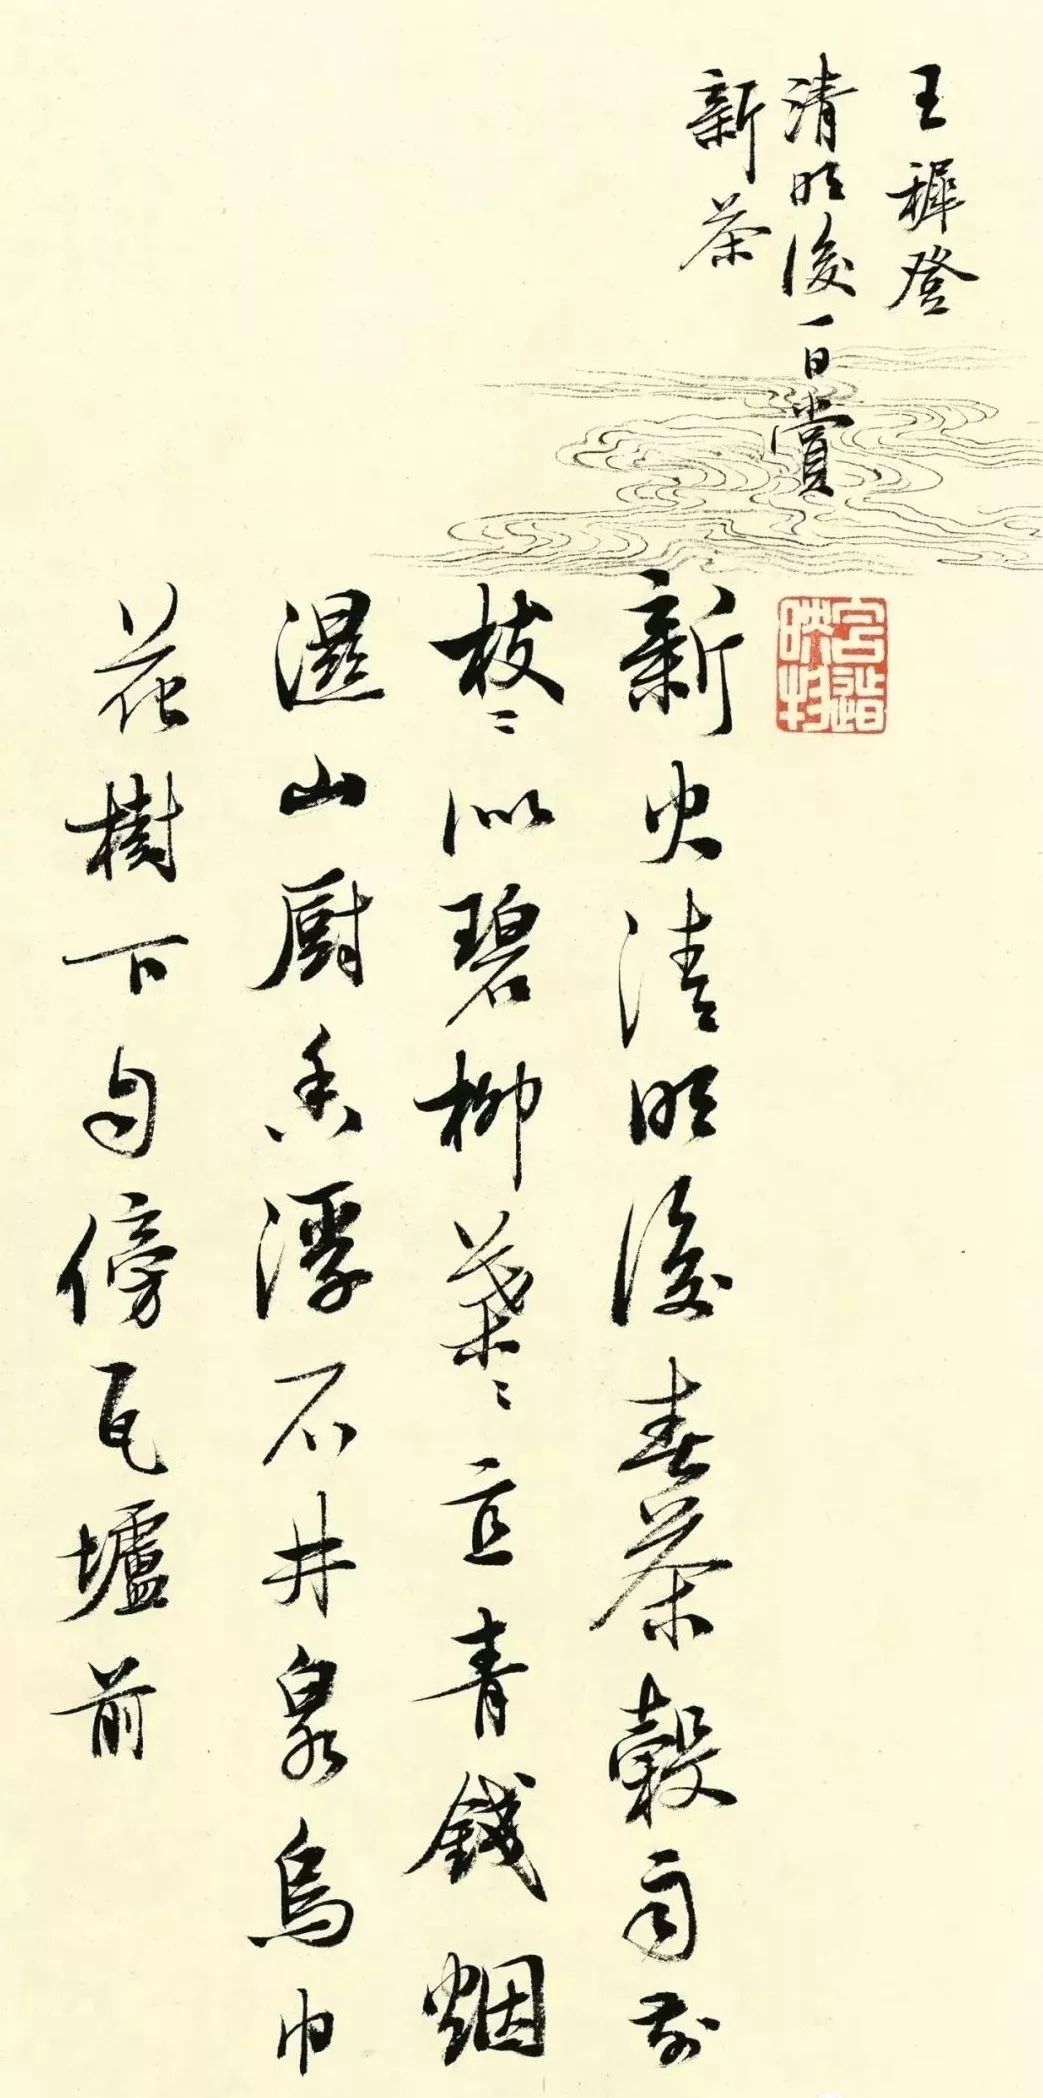 许静 行书—茶诗十首作品著名书法家,篆刻家黄惇教授曾这样评价自己的